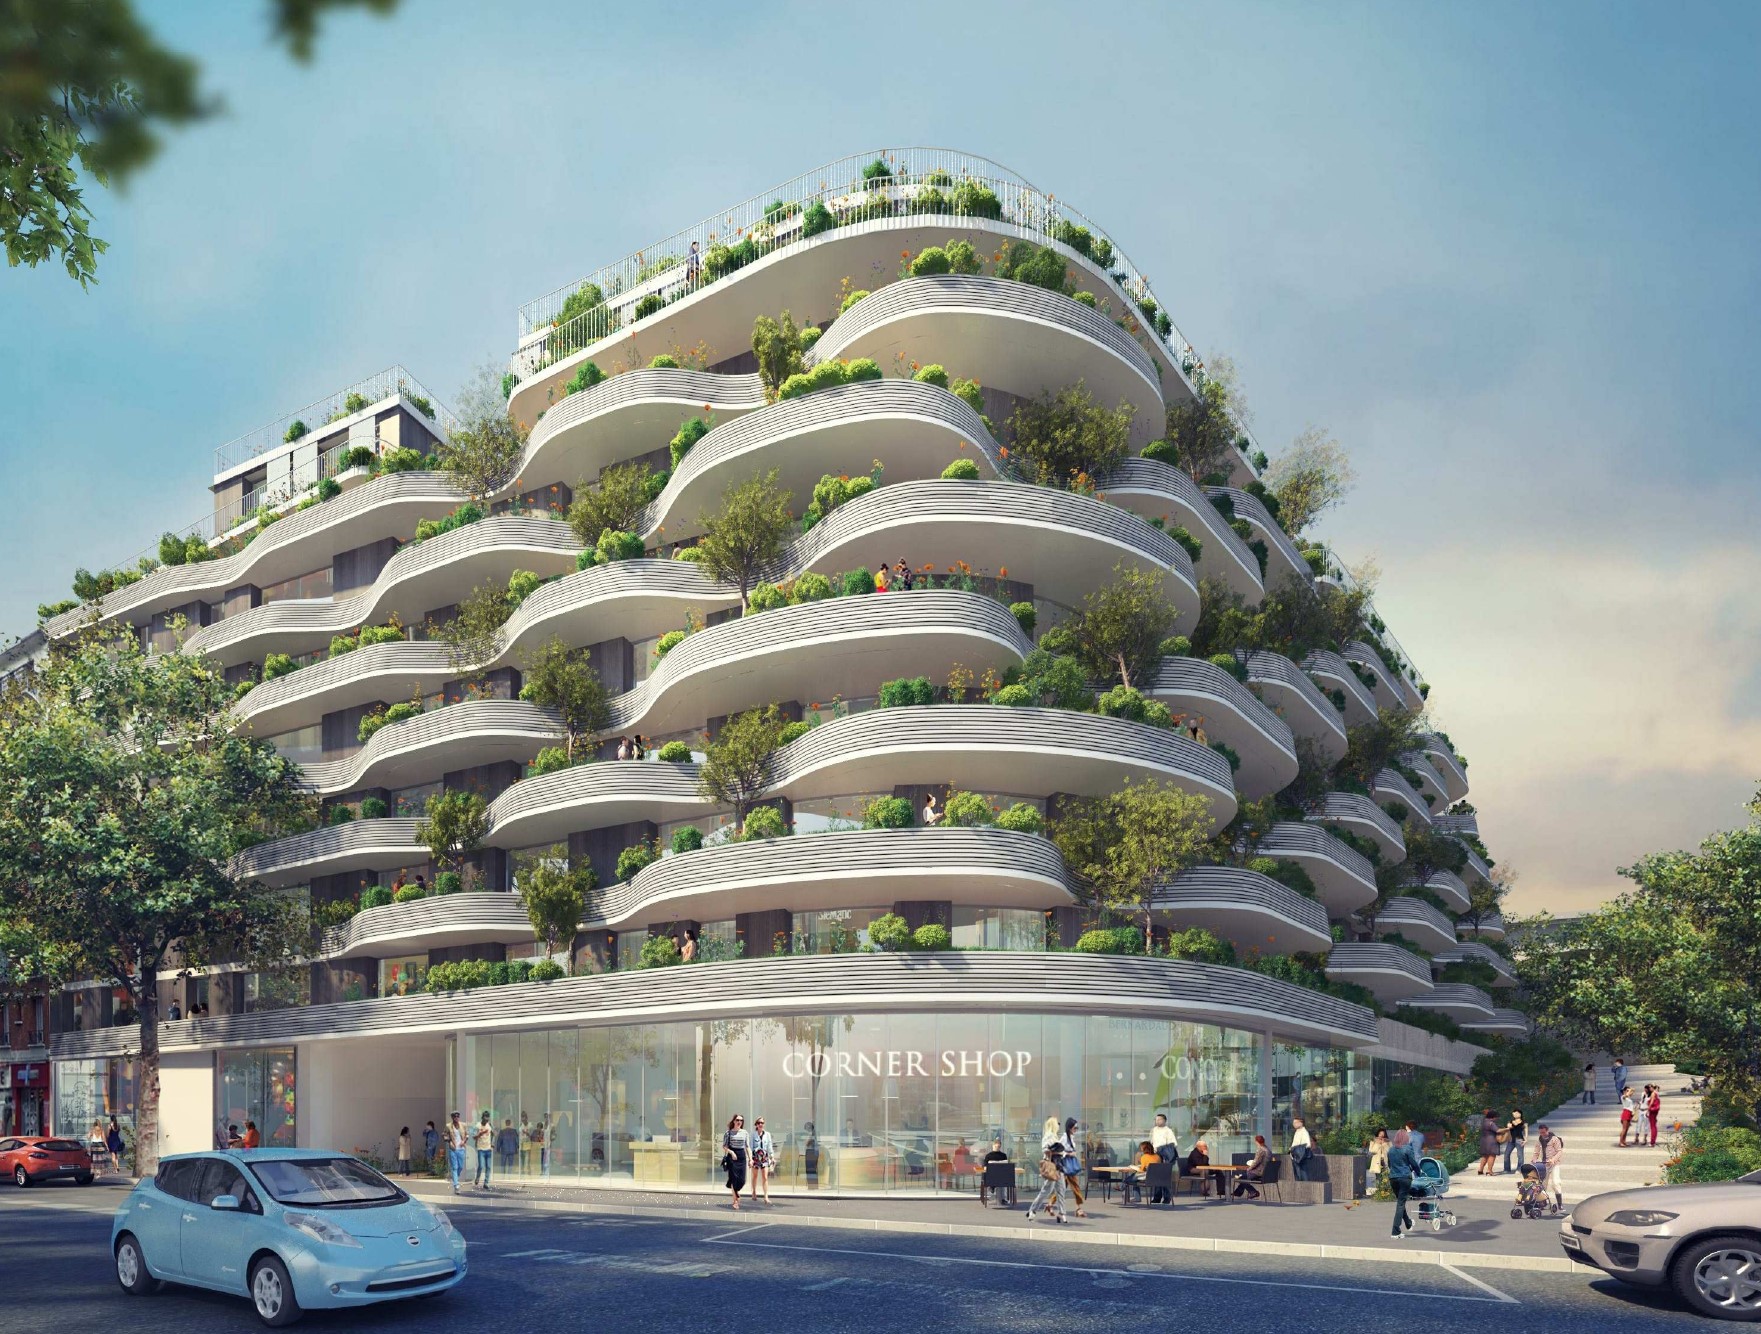 La végétation fera partie intégrante des futurs immeubles autour de la gare Issy RER. Visuel Icade architecture studio